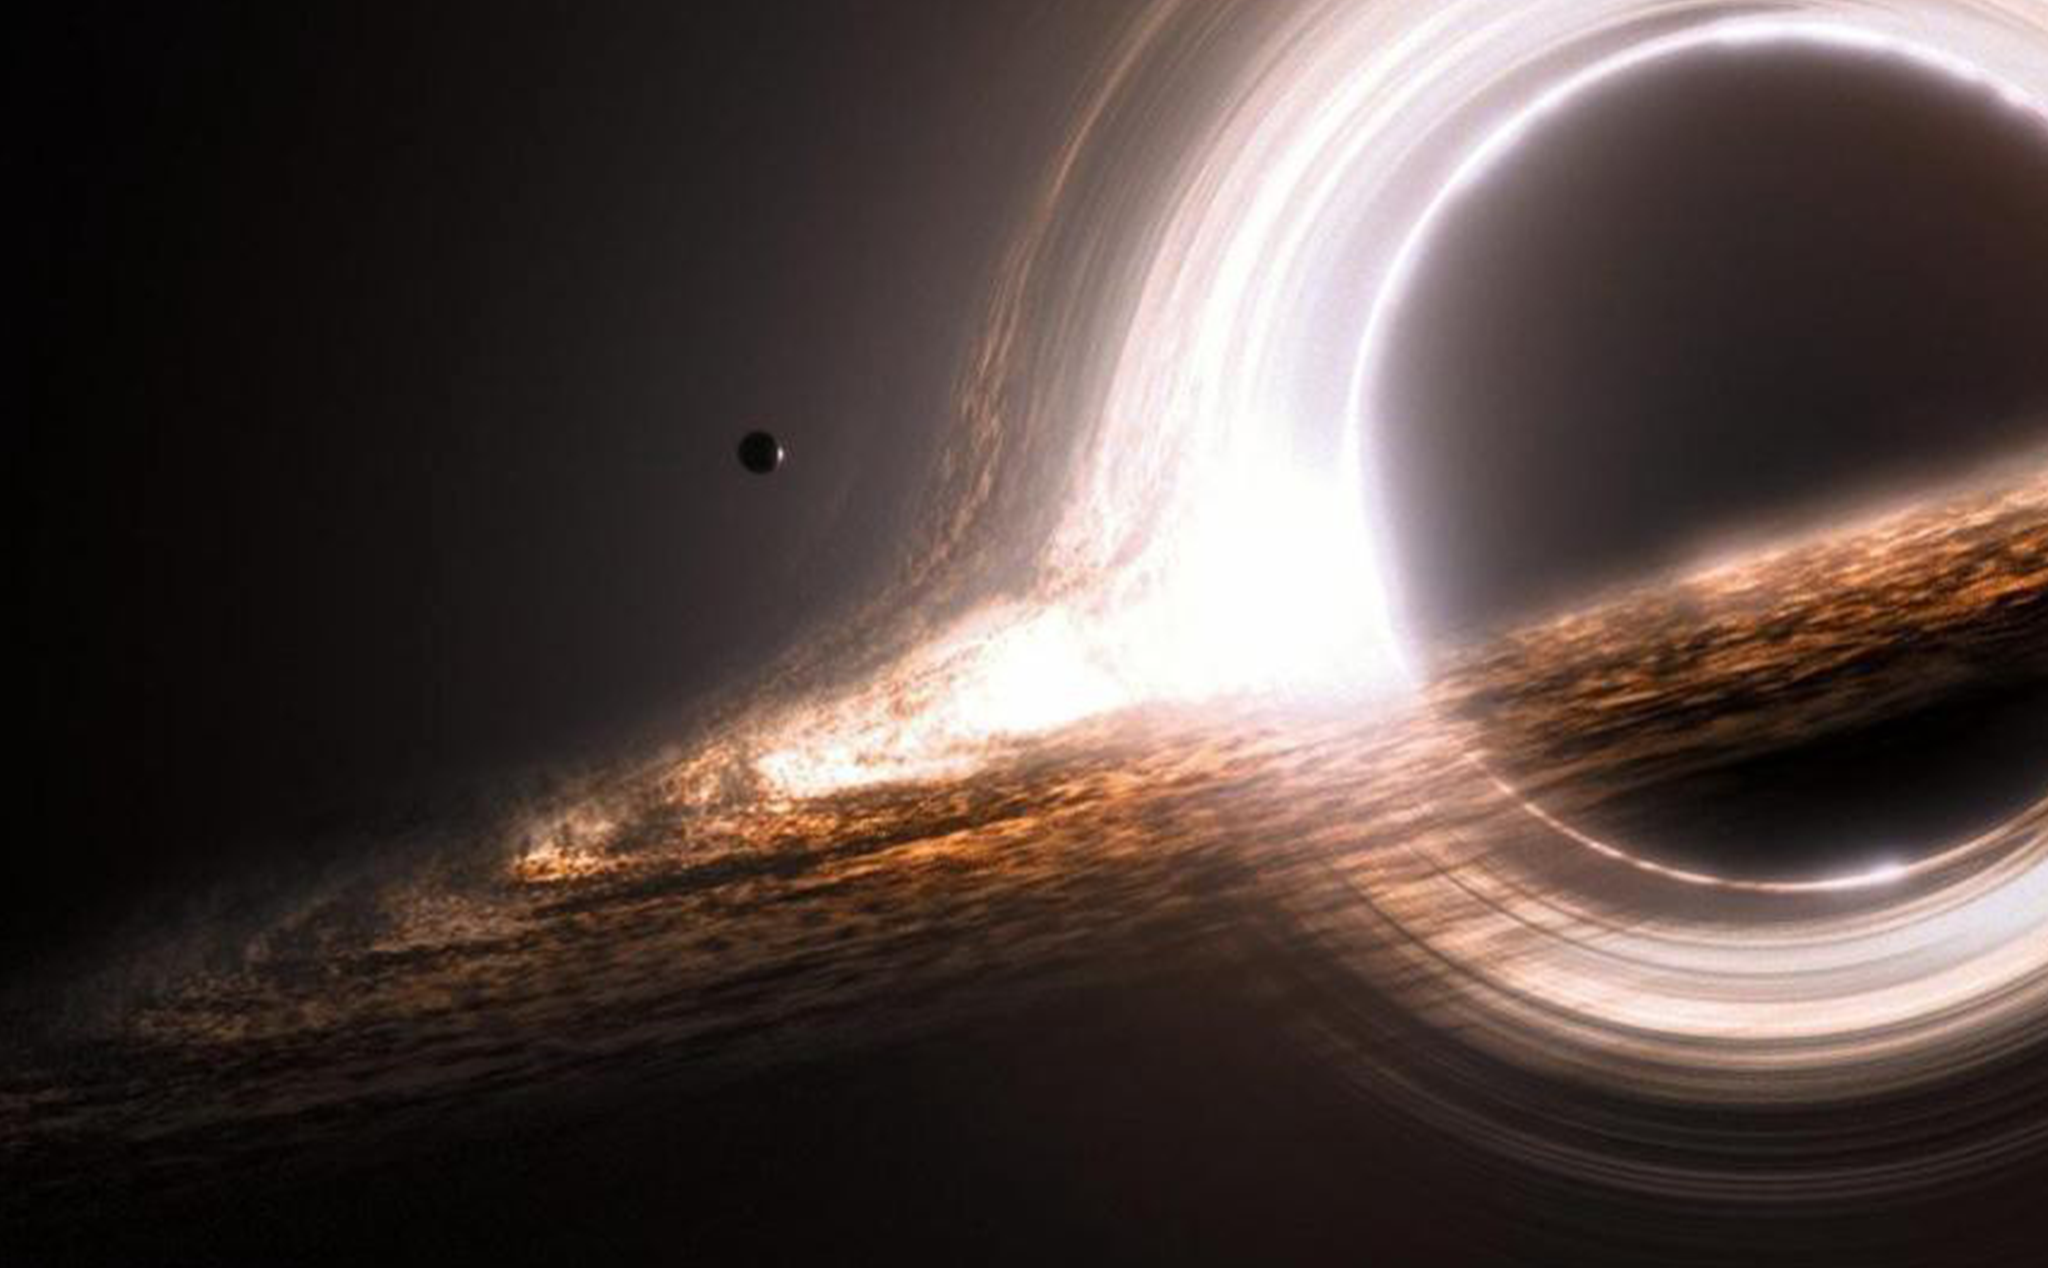 Đừng bỏ lỡ cơ hội được chiêm ngưỡng hình ảnh của hố đen không hút vật chất - một điều rất khó hiểu và thú vị trong vũ trụ của chúng ta.